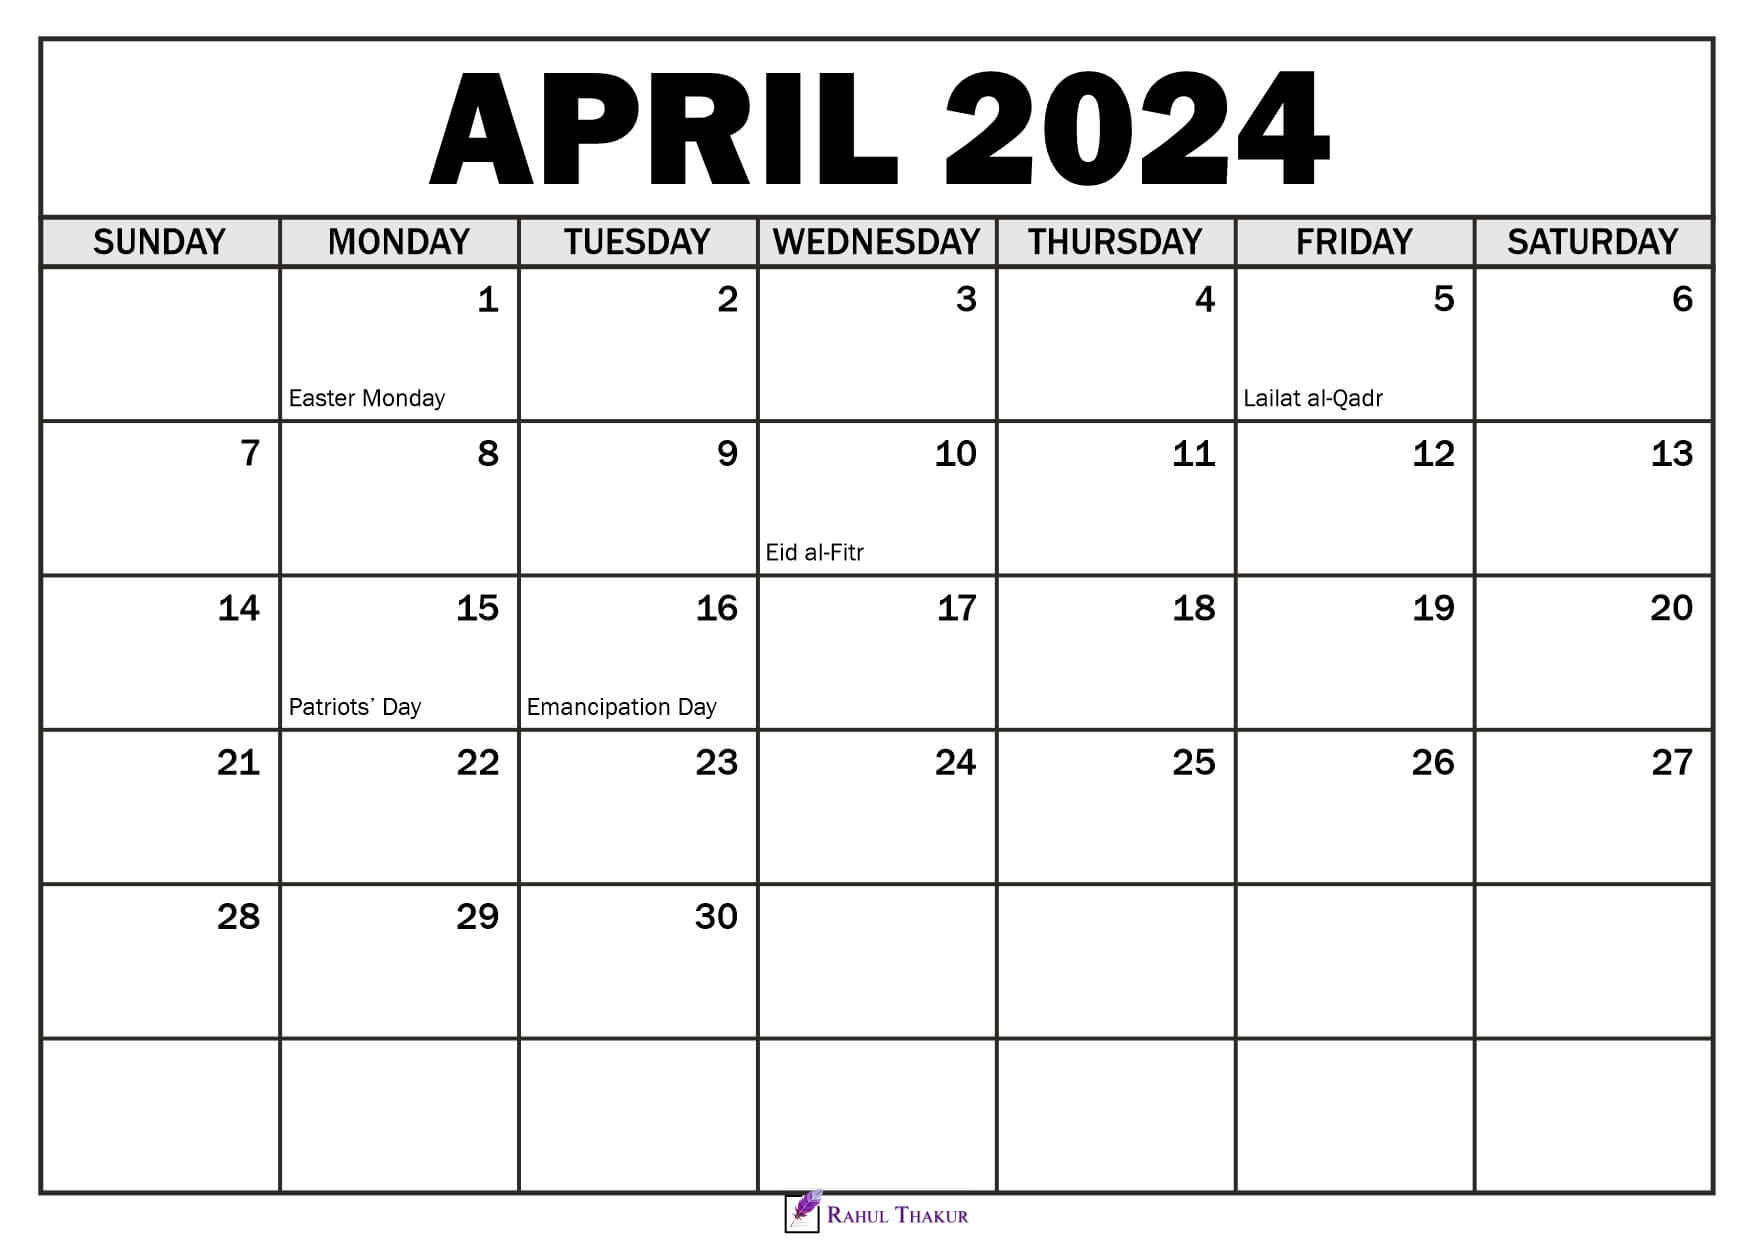 April 2024 Calendar with Holidays